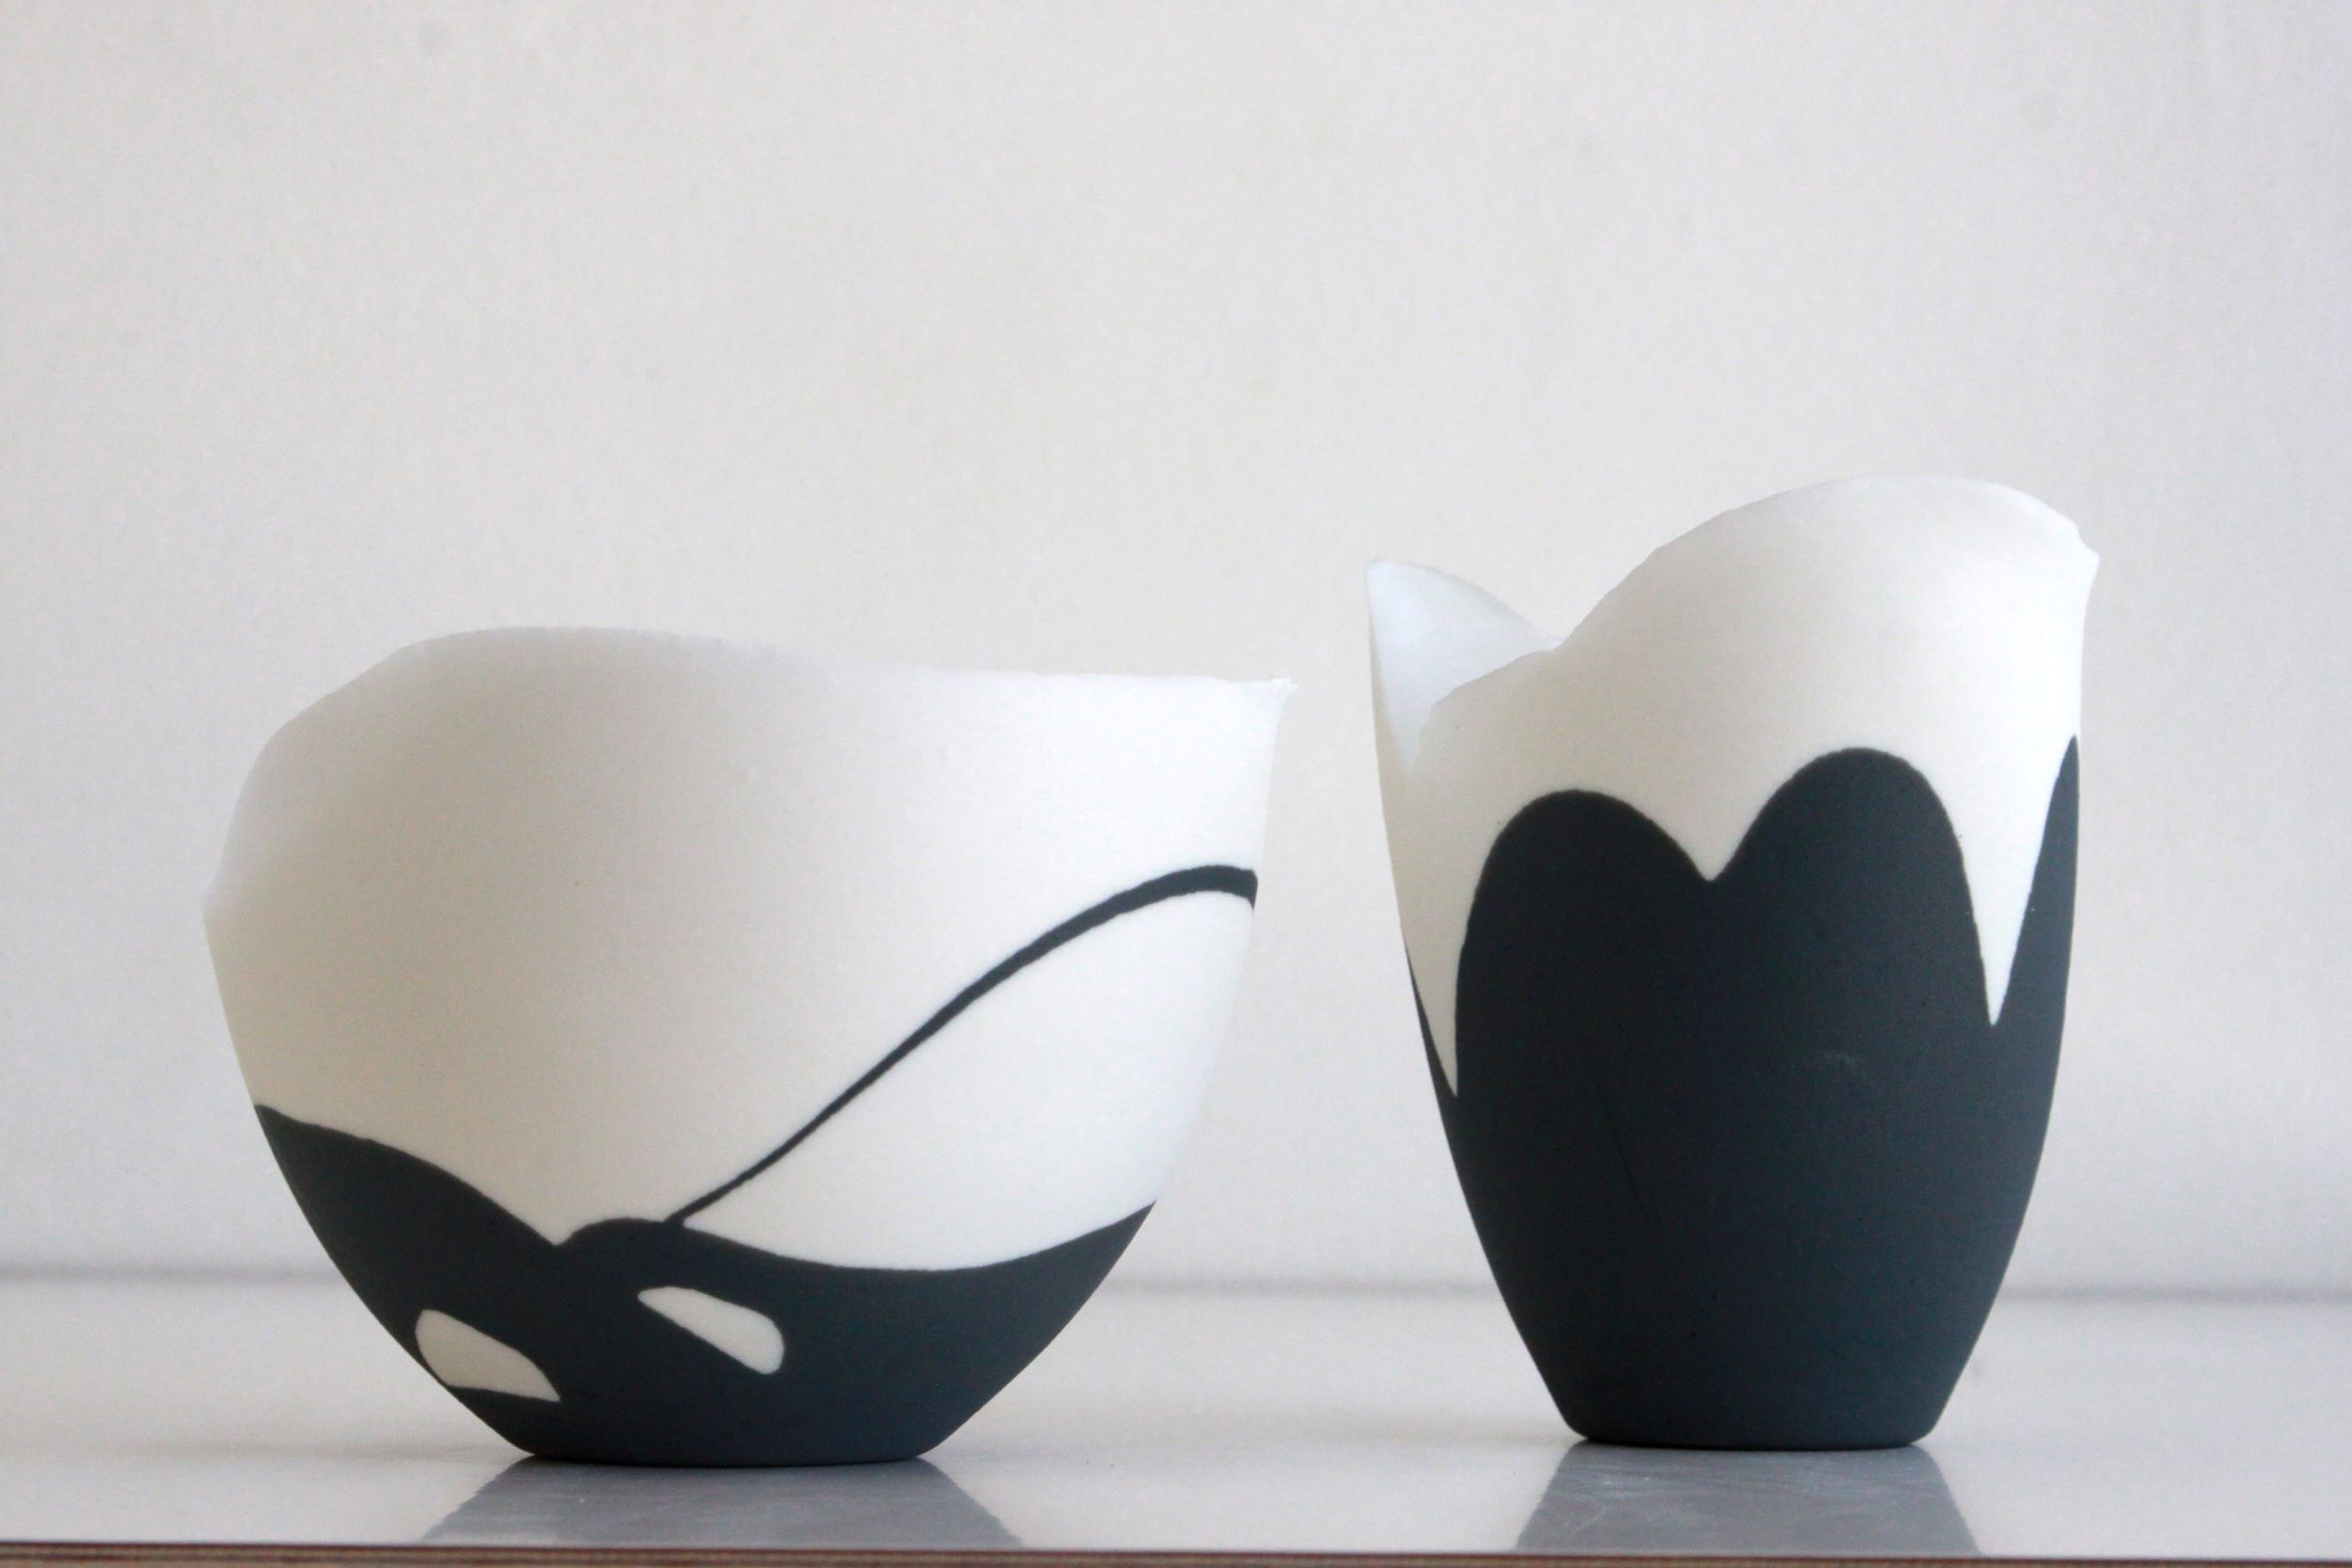 Bilder ufer weiß - Atelier für Keramik